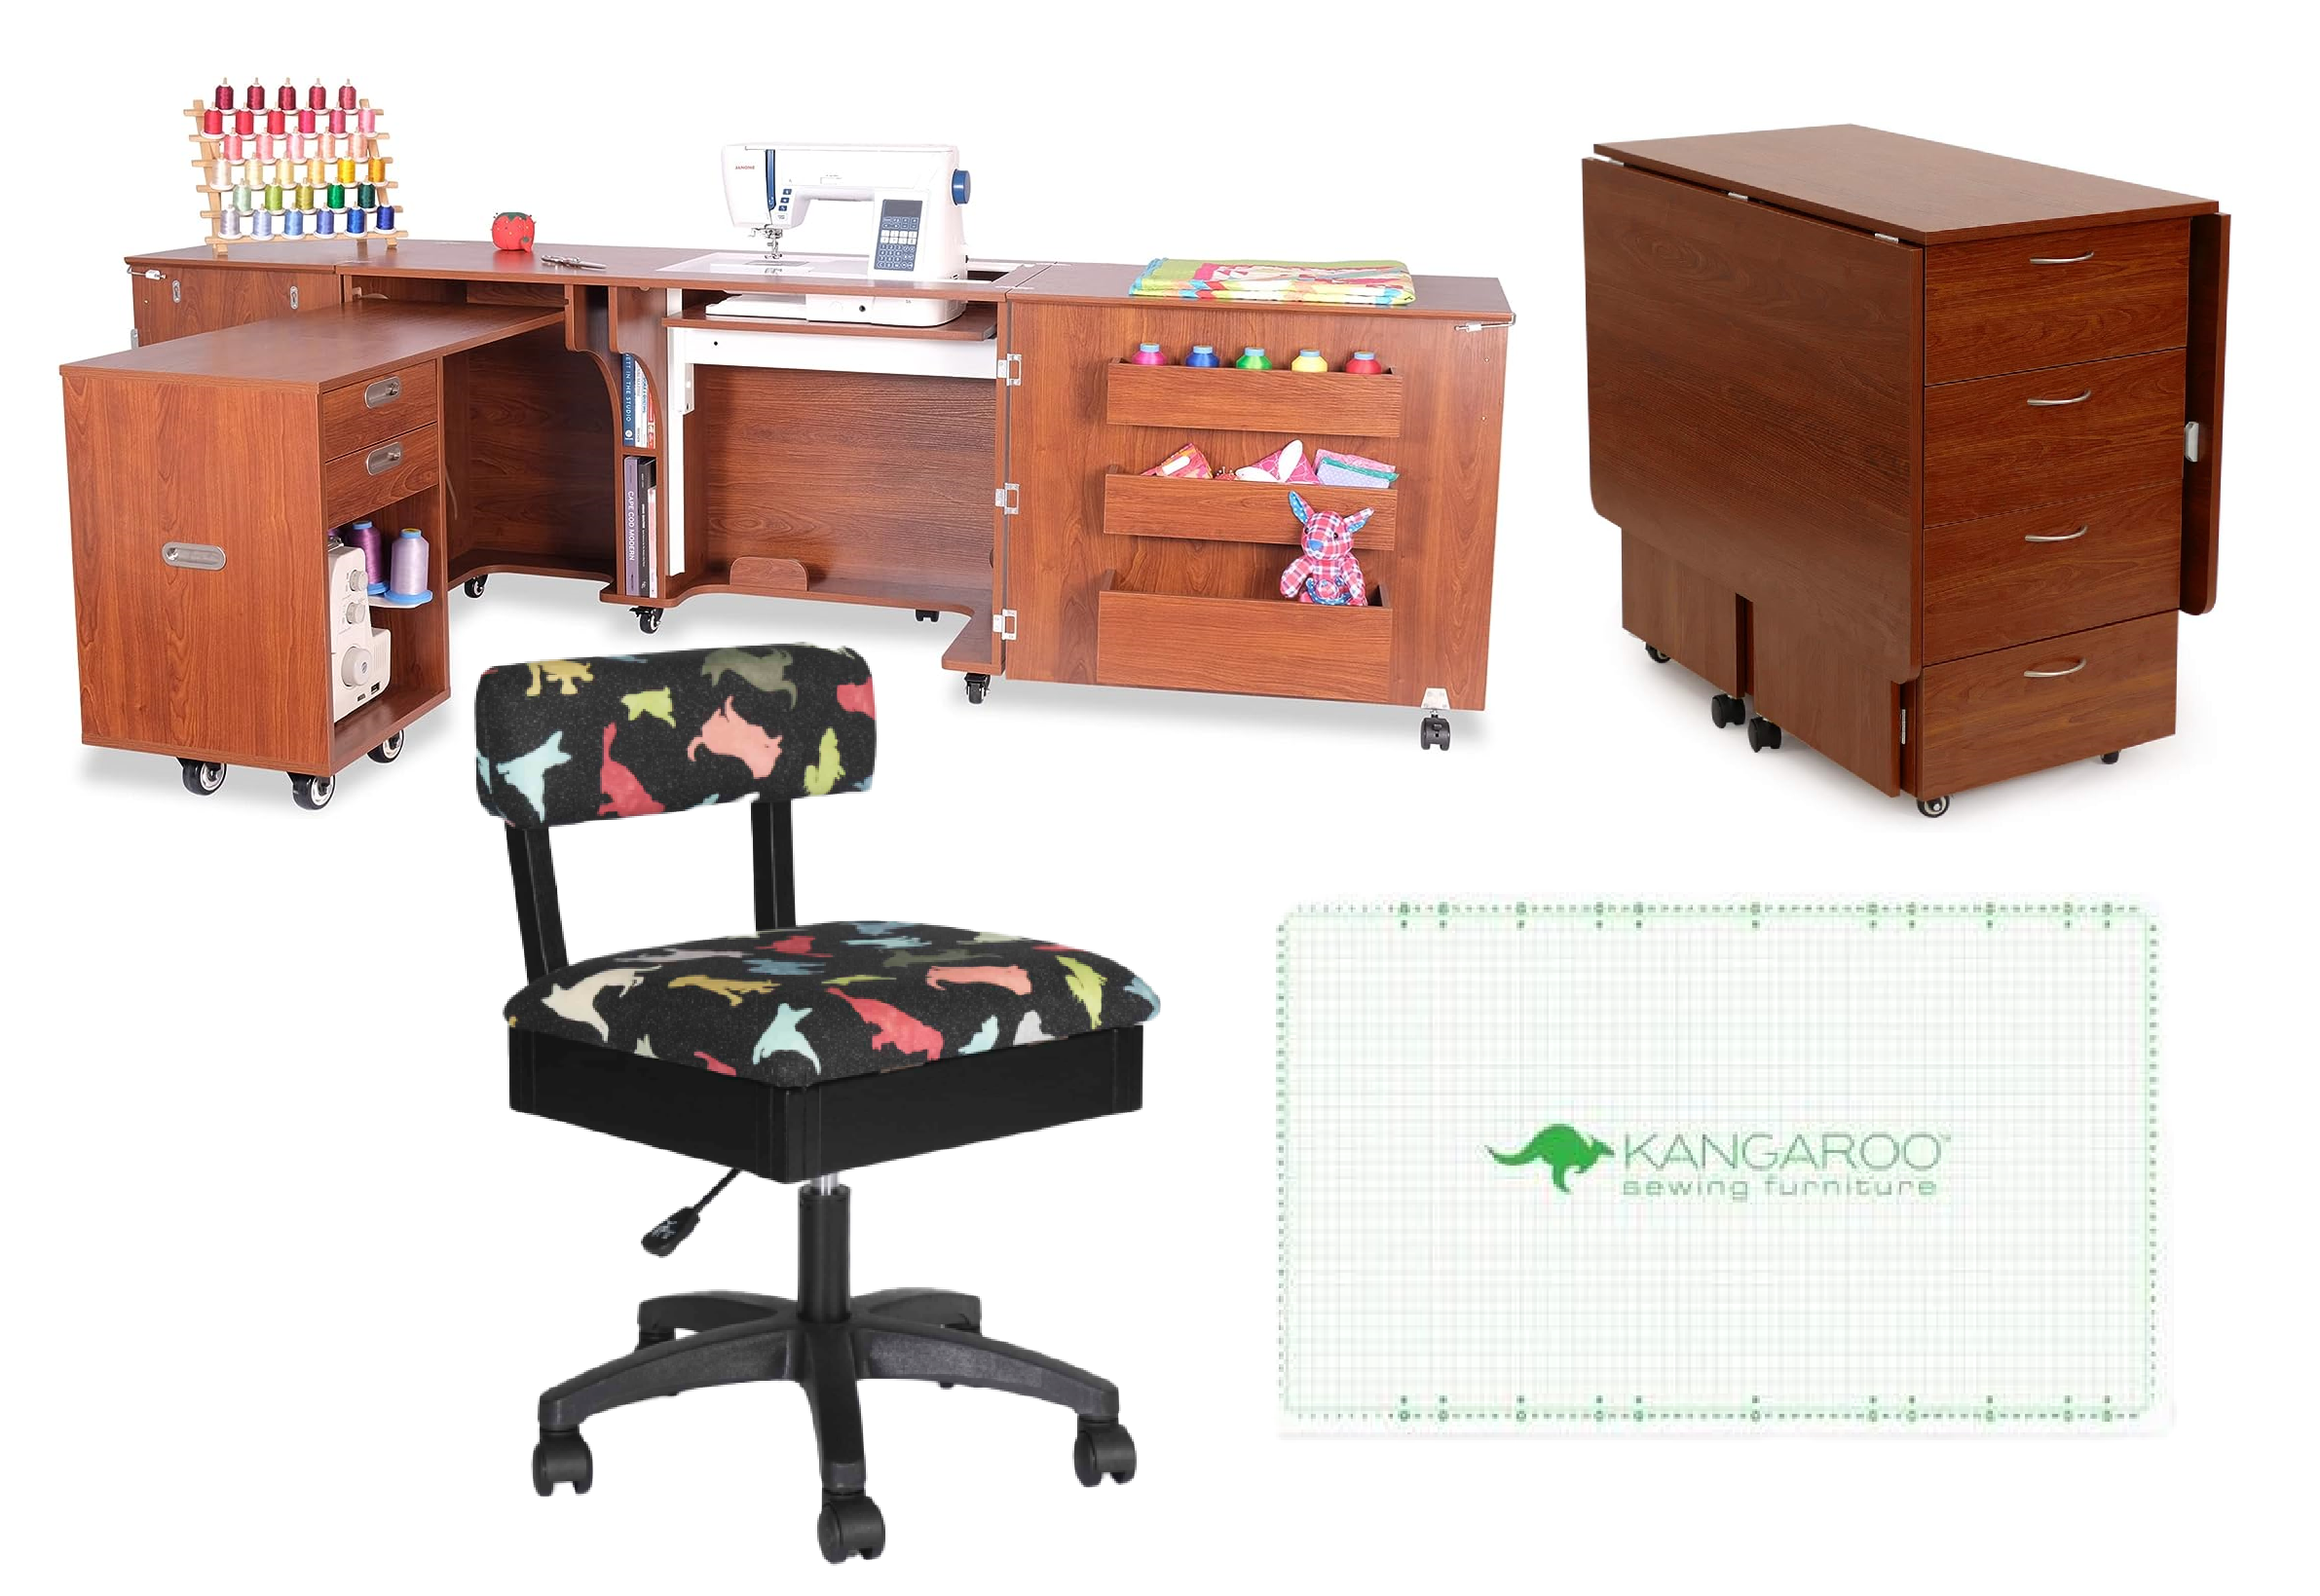 Arrow Sewing Aussie + Kookaburra Sewing and Crafting Furniture Bundle